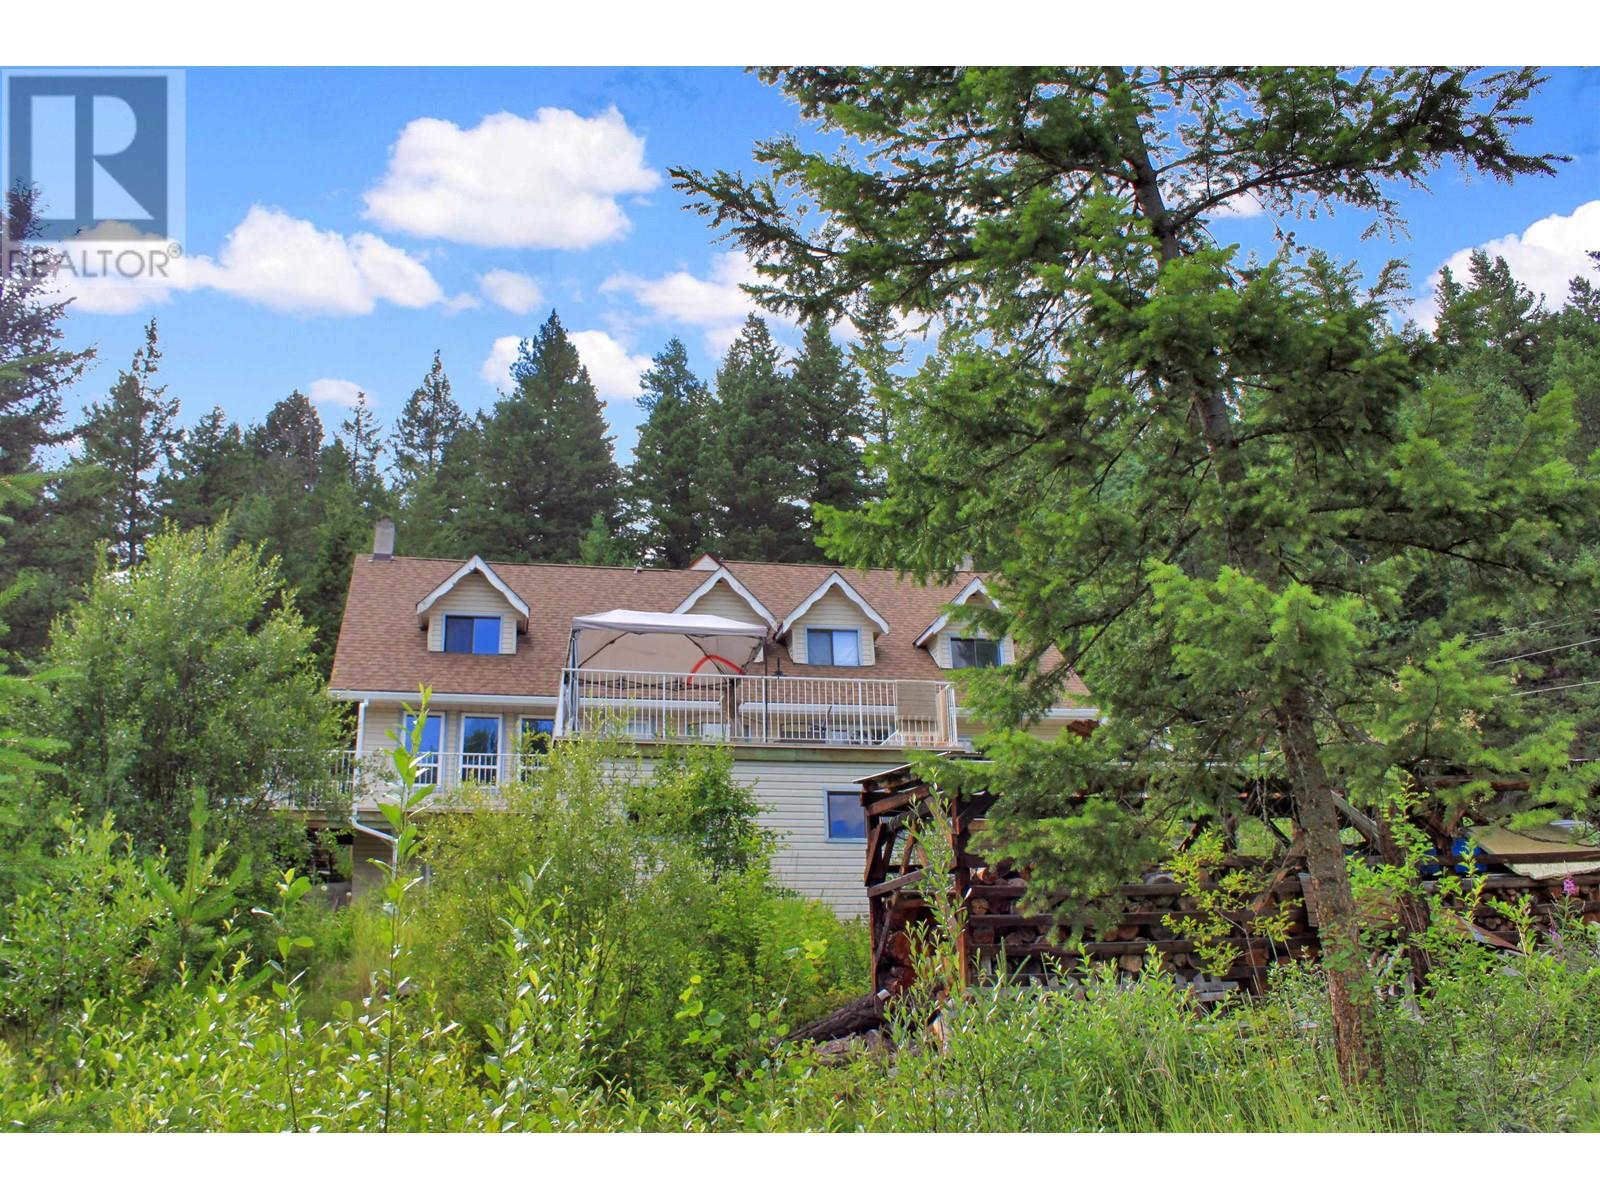 5476 CANIM-HENDRIX LAKE ROAD, 100 mile house, British Columbia